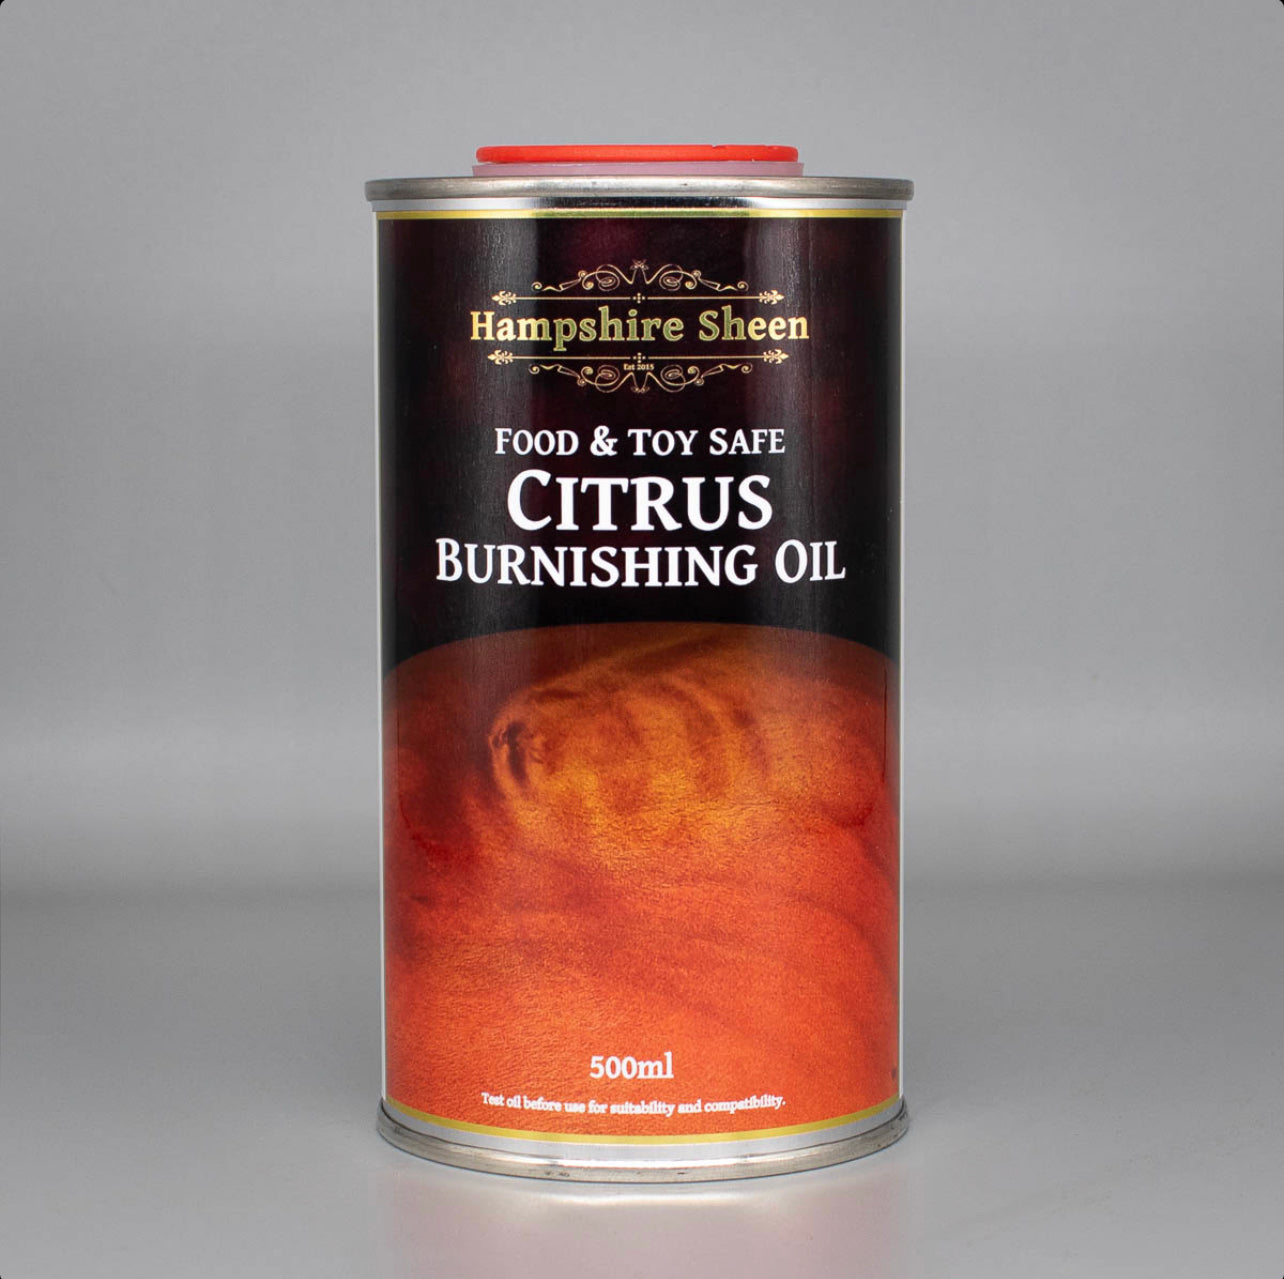 Citrus Burnishing Oil | Hampshire Sheen